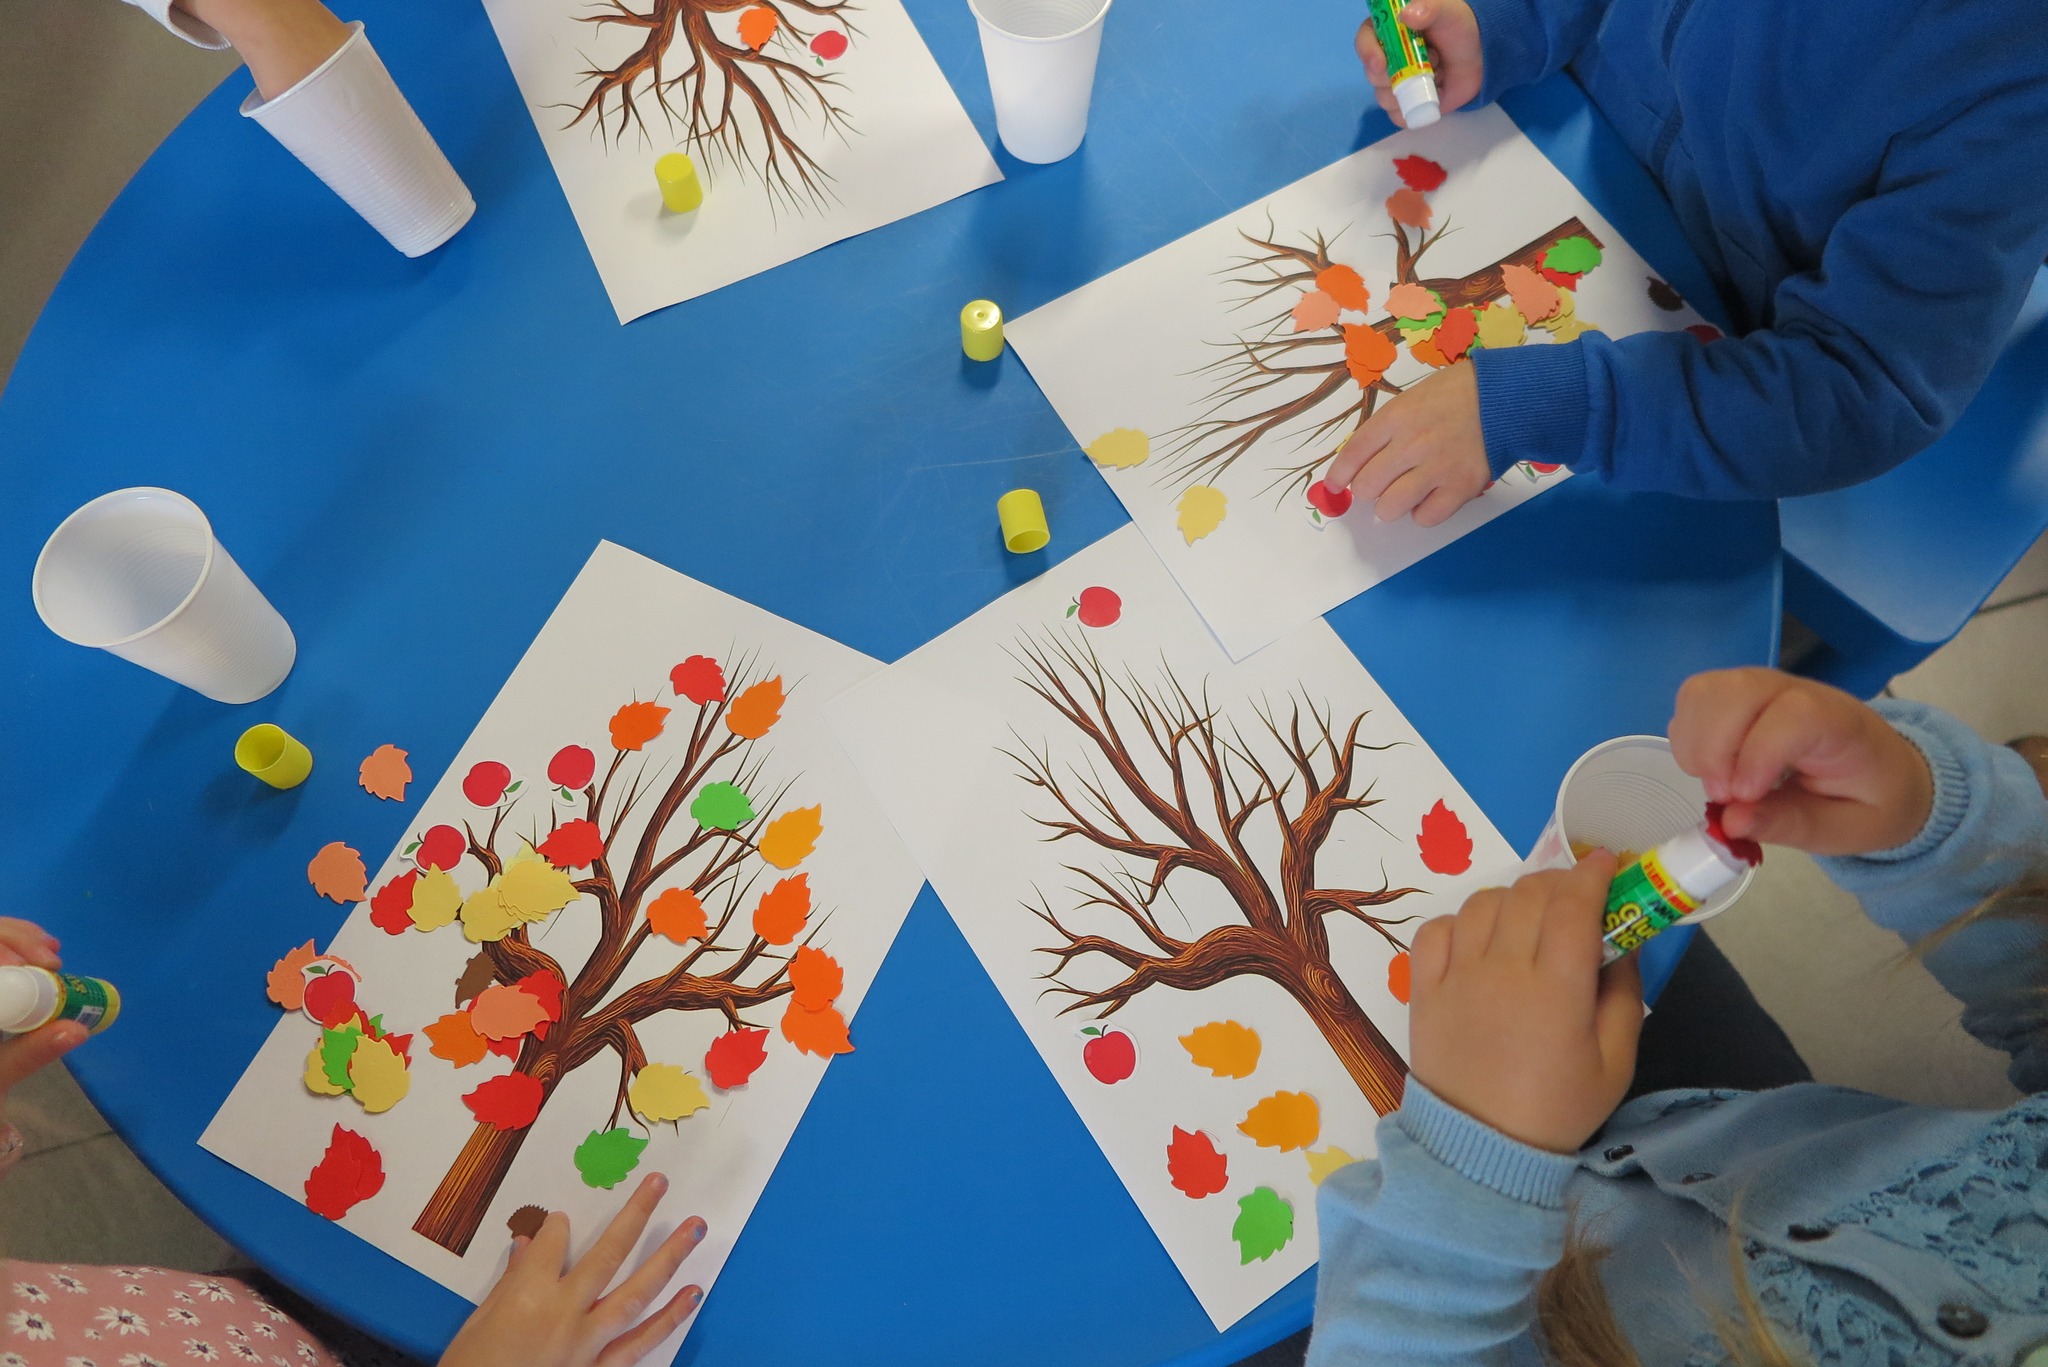 wyklejanie drzewa wydrukowanego na kartce kolorowymi liśćmi z papieru